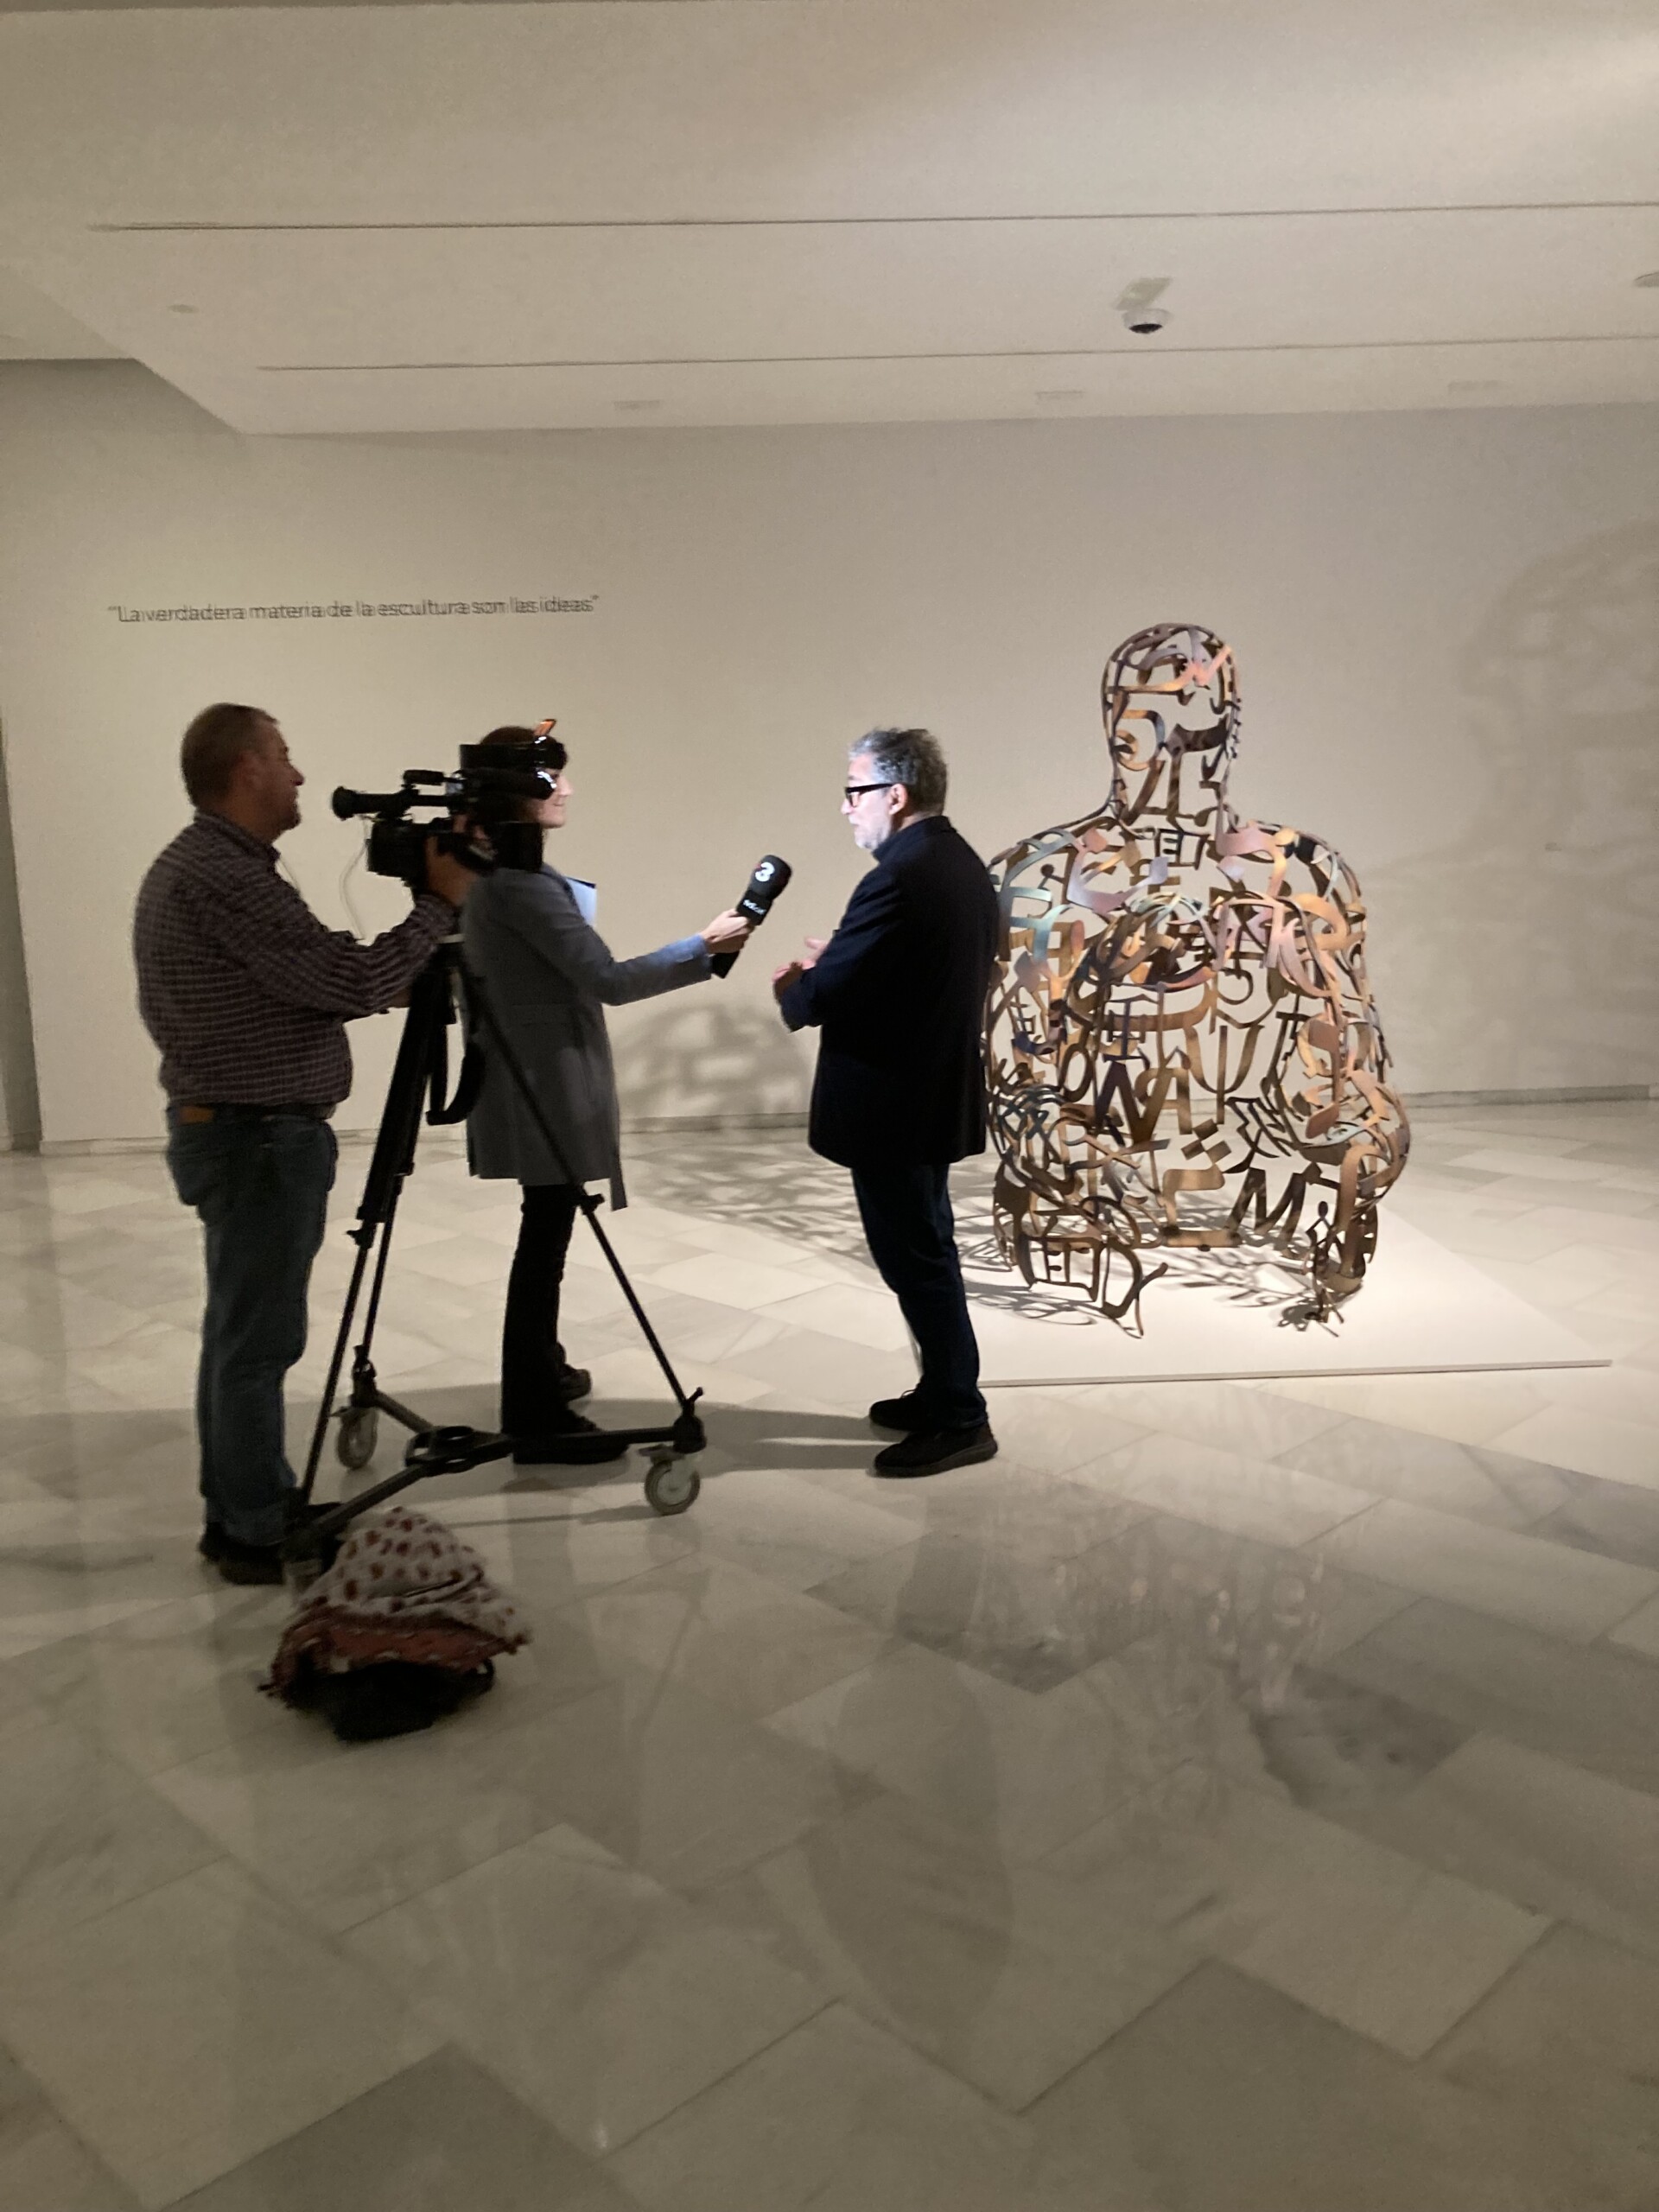 Imatge d'uns periodistes entrevistant un home davant d'una escultura de Jaume Plensa